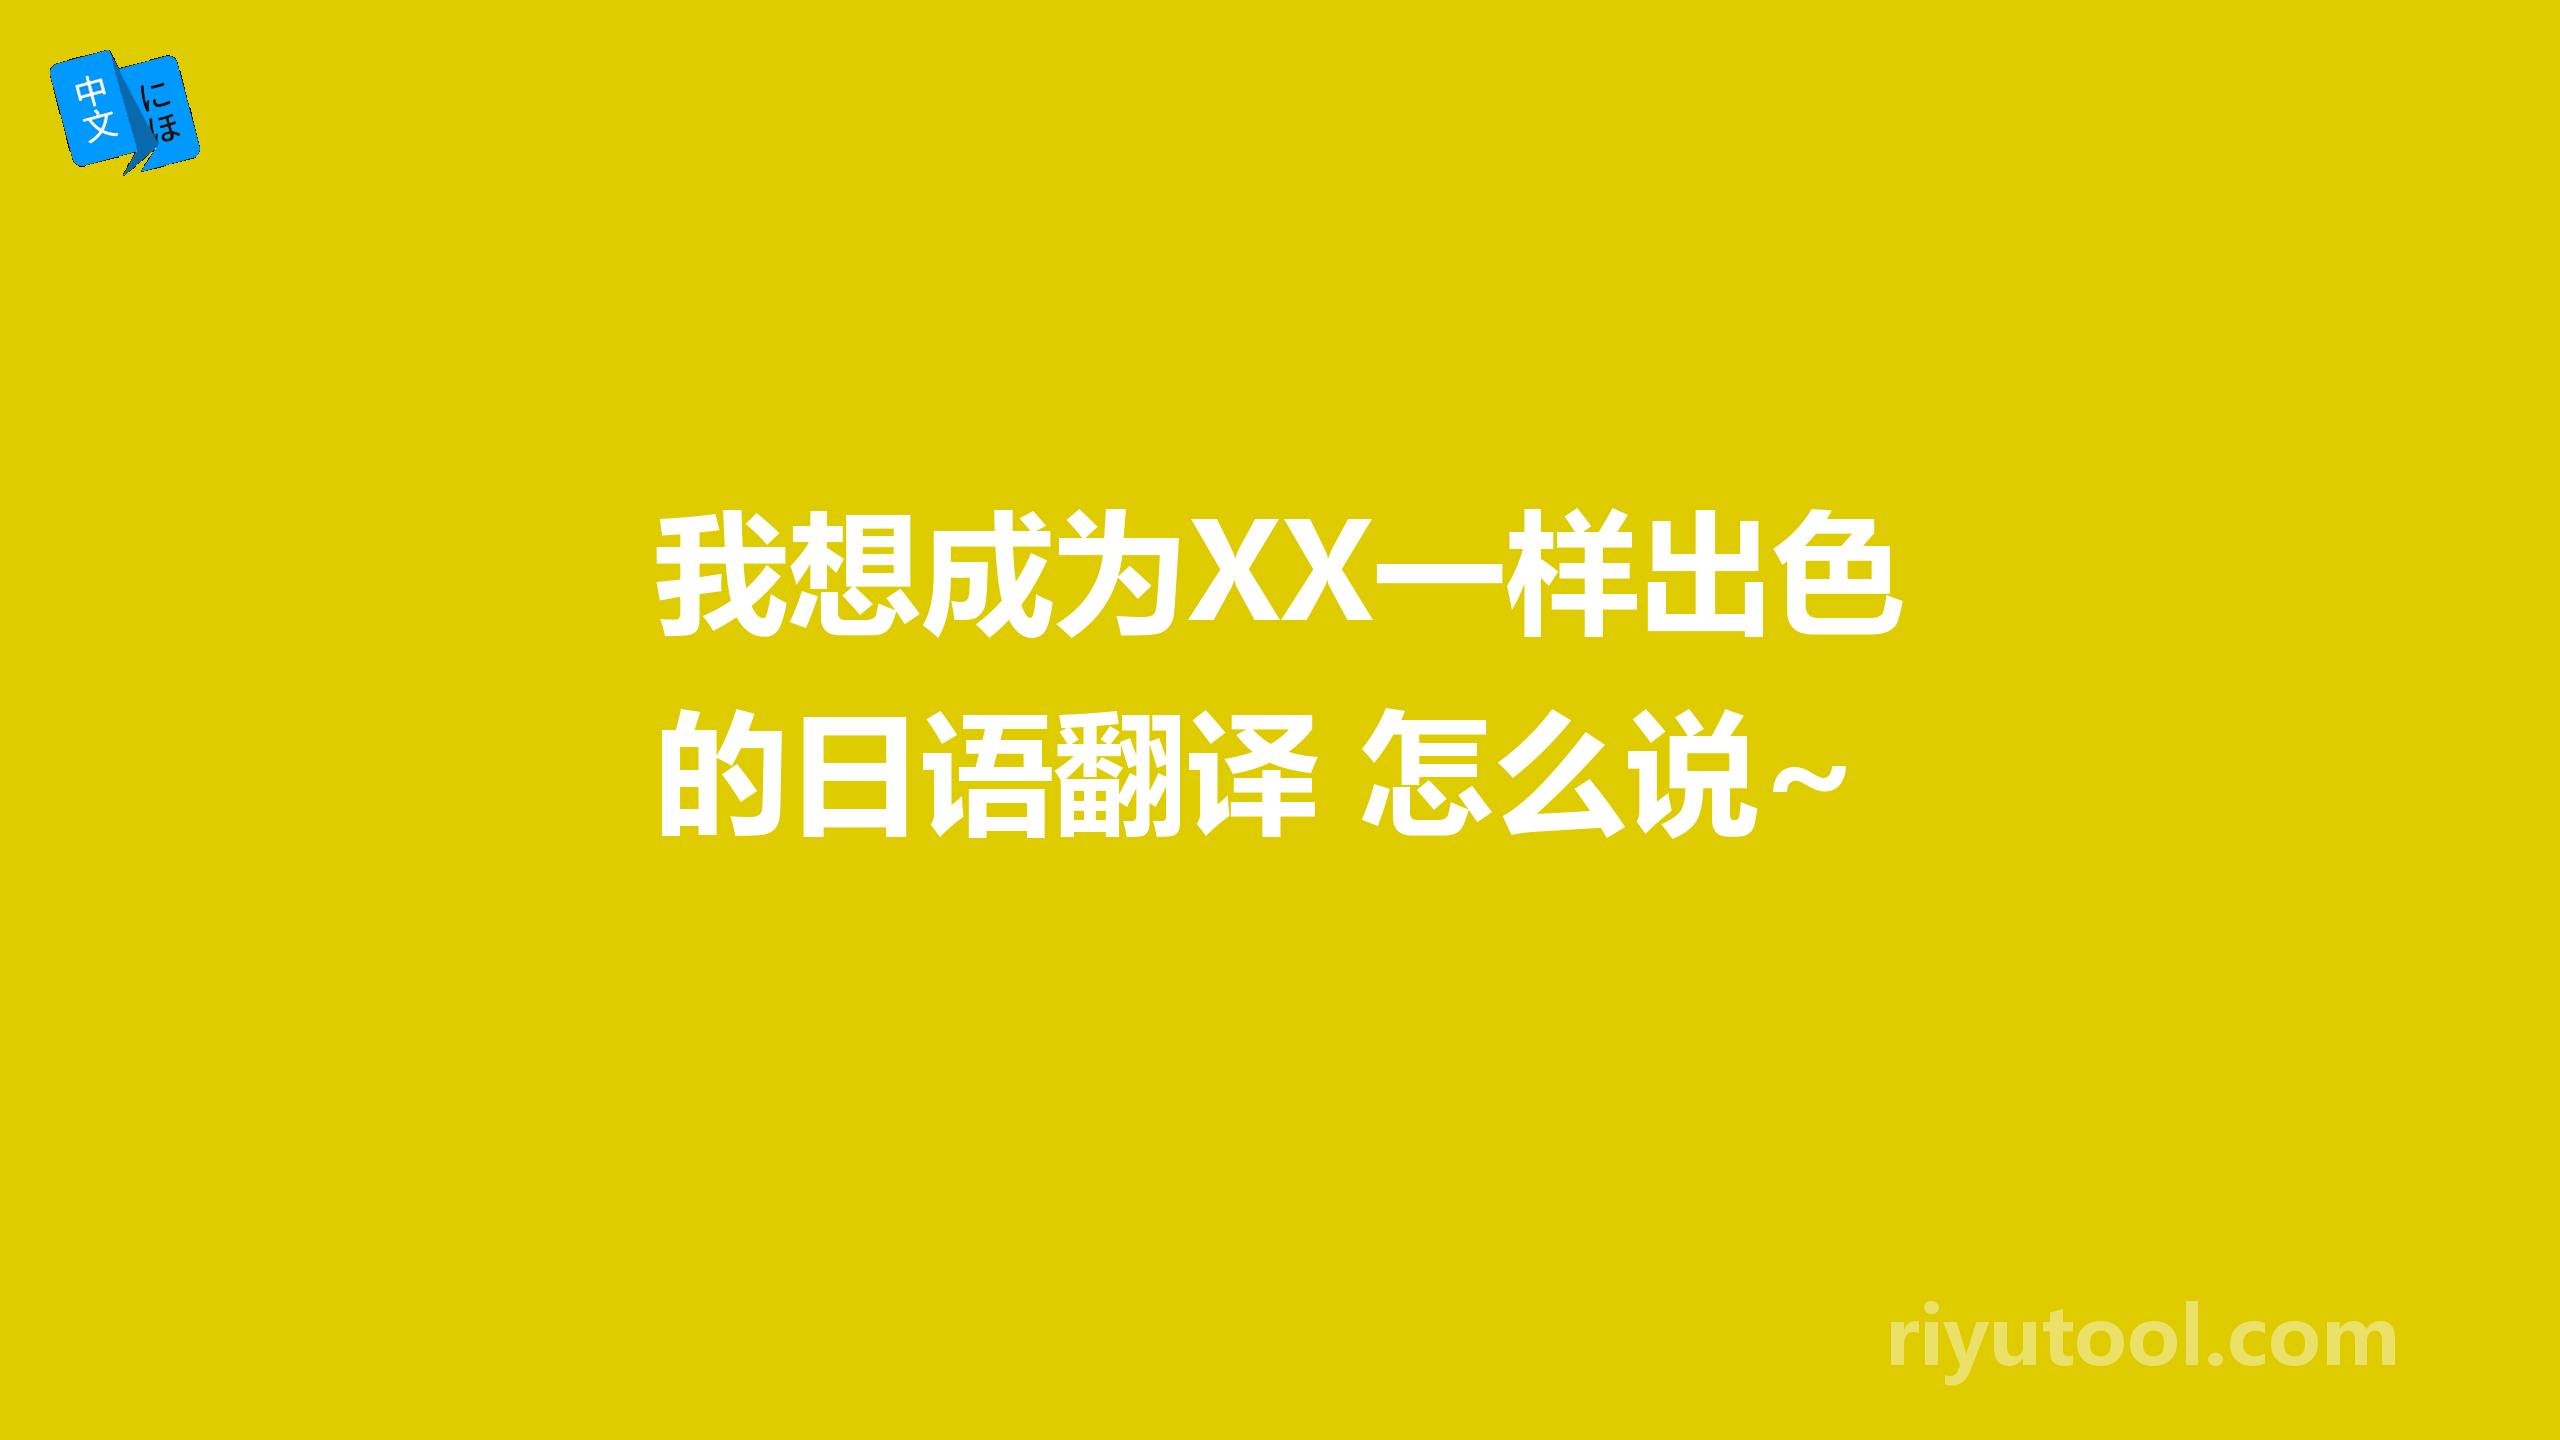 我想成为XX一样出色的日语翻译 怎么说~